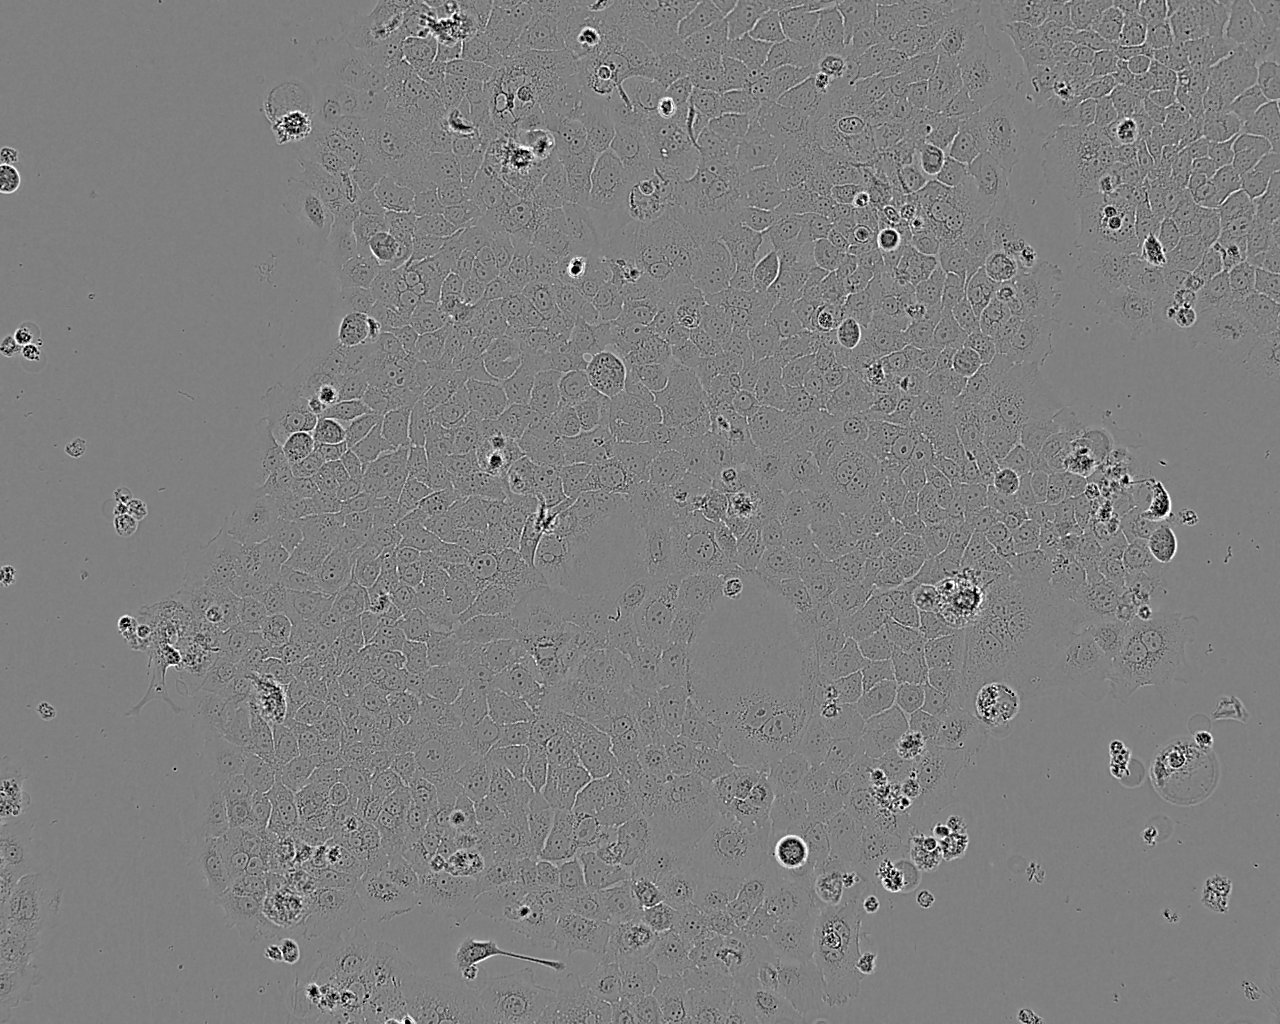 UMC-11 Cell:人肺良性肿瘤细胞系,UMC-11 Cell